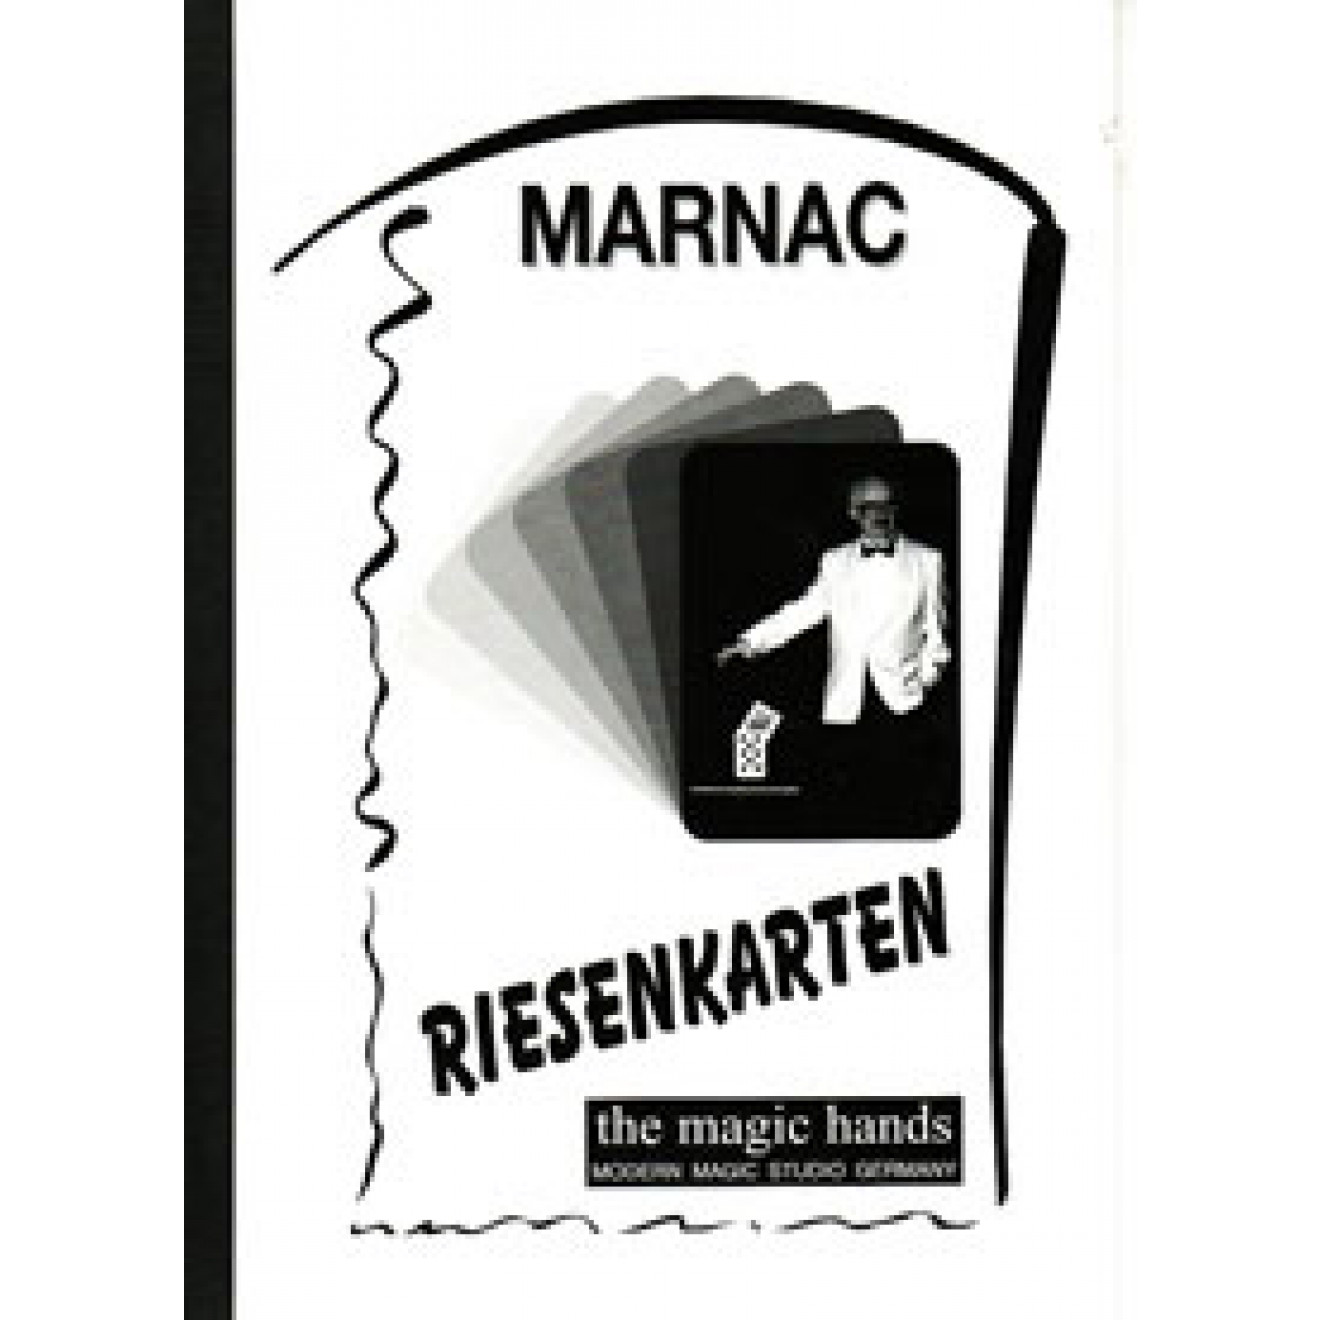 Riesenkarten (Marnac)